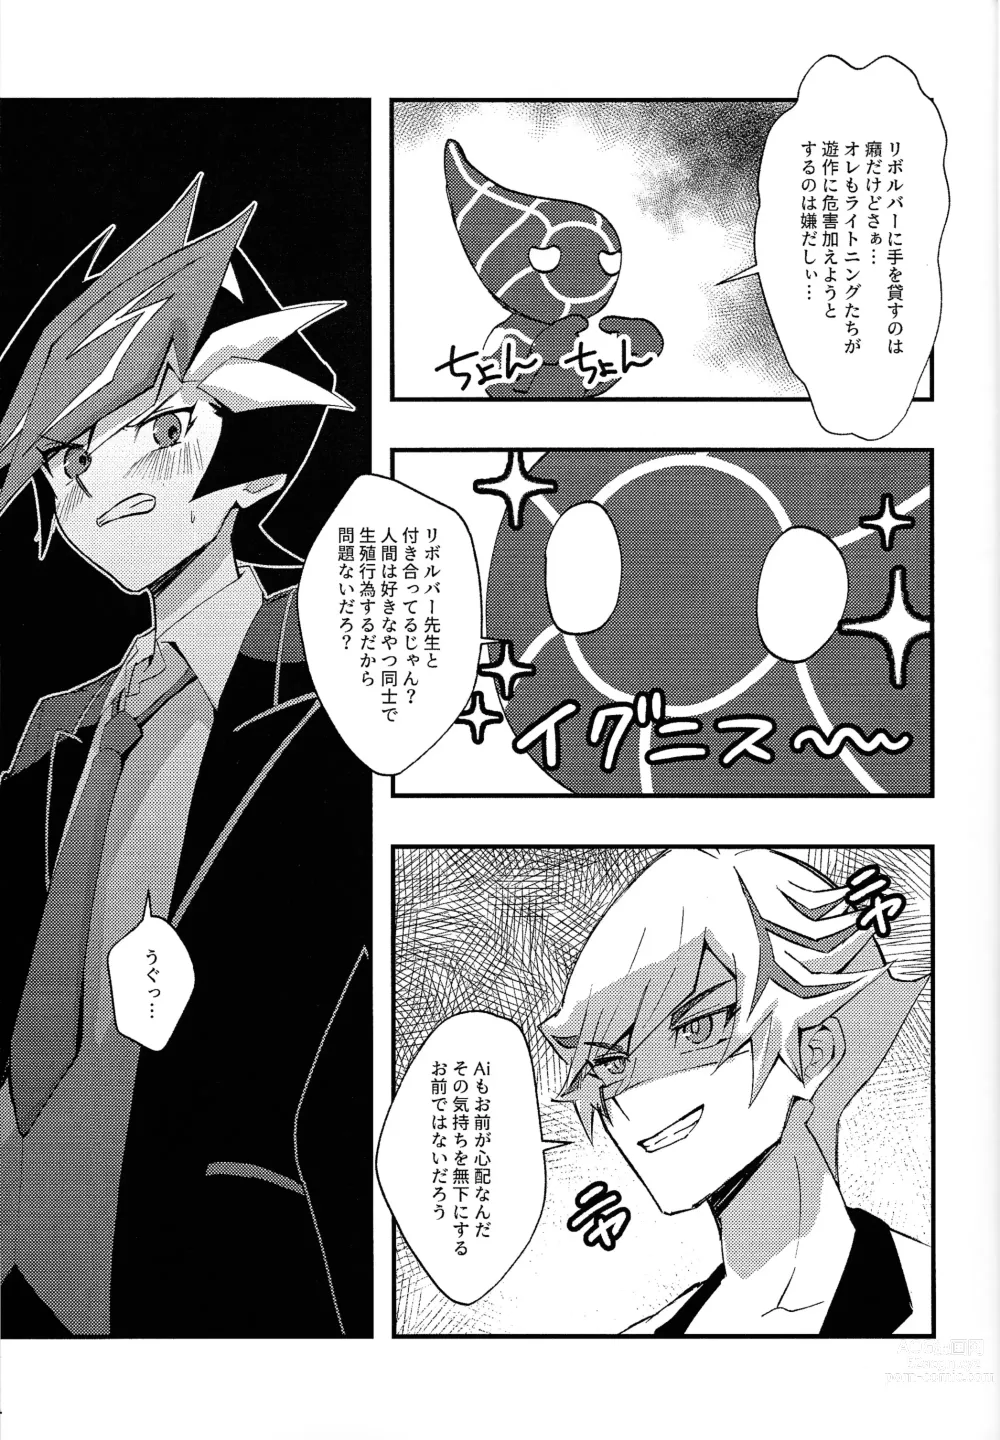 Page 6 of doujinshi Saisho kara ie!!